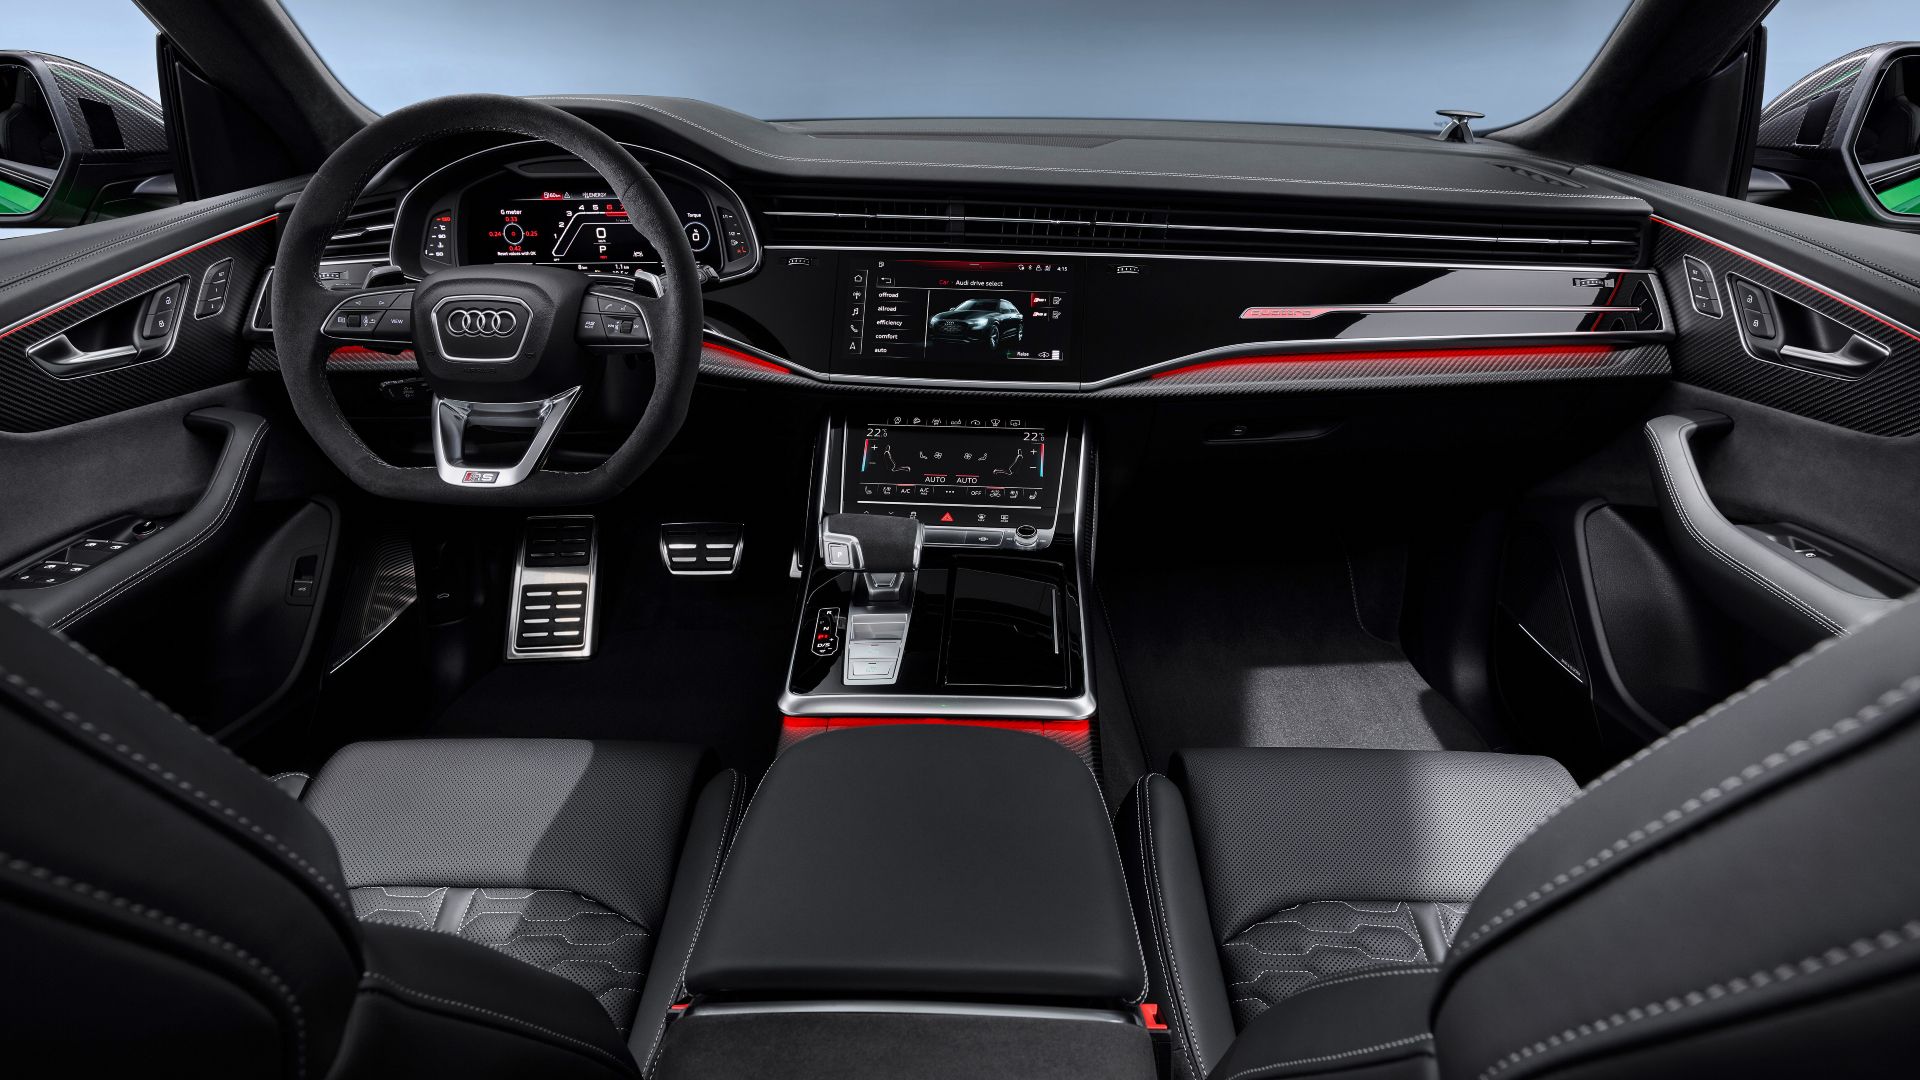 Interior of the Audi RS Q8